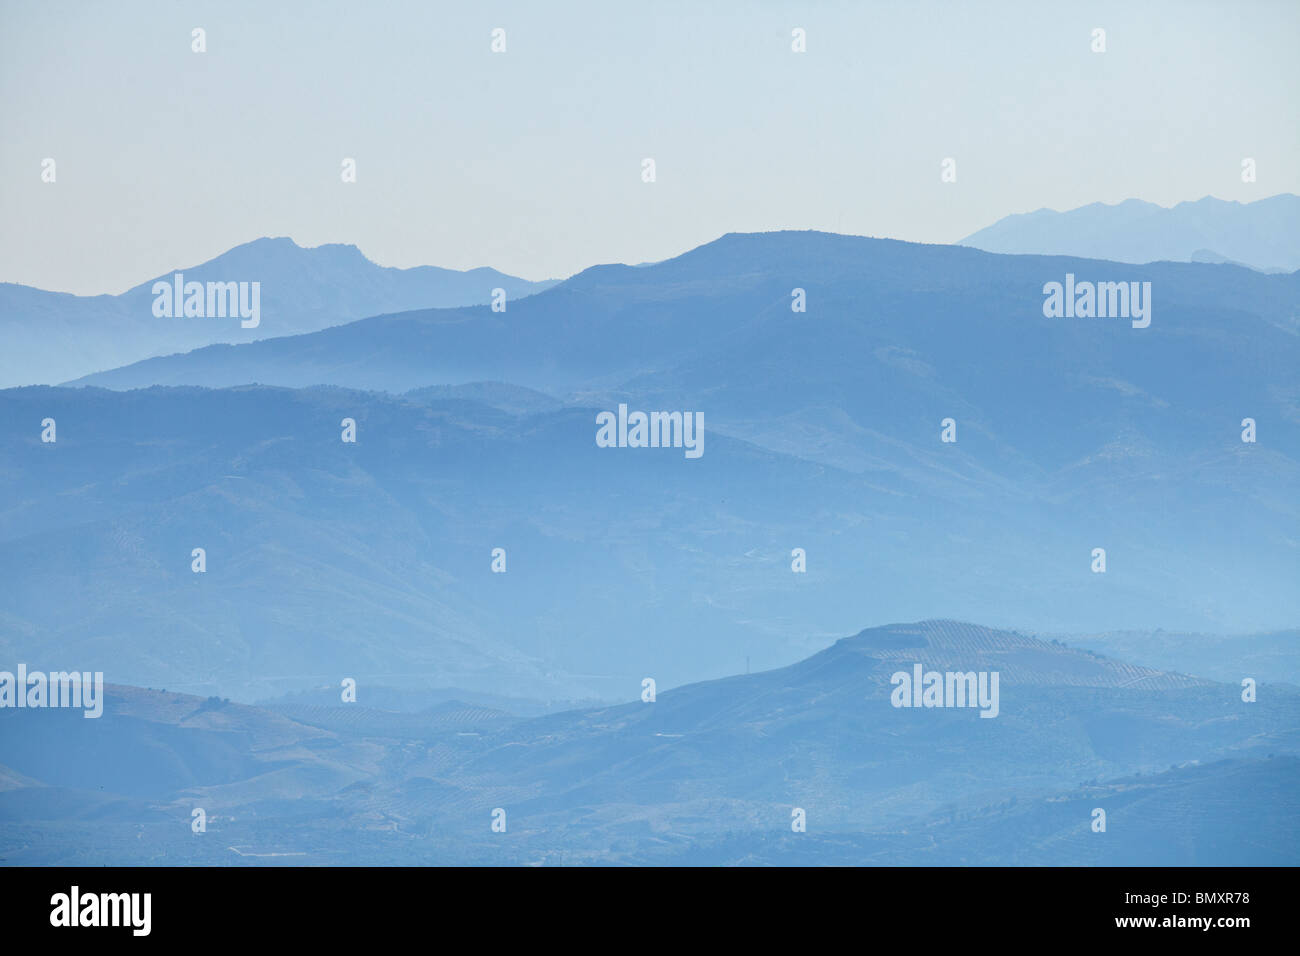 Silhouettes of Sierra Nevada mountains, Las Alpujarras, Andalusia, Spain Stock Photo